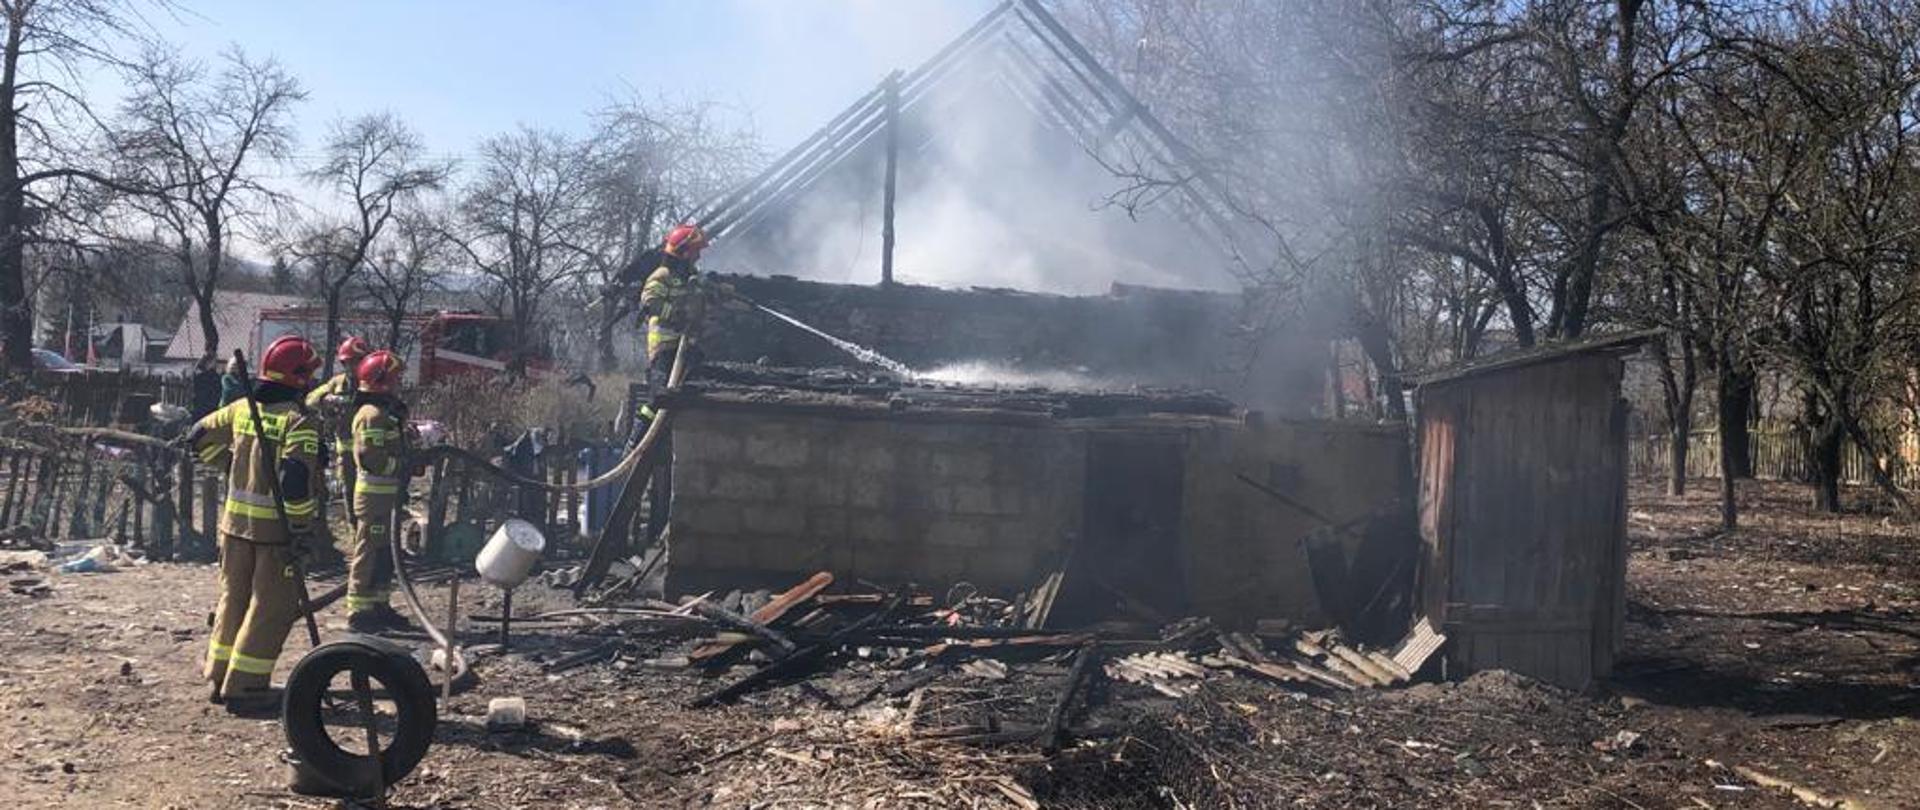 Na miejscu widoczny pożar domu jednorodzinnego gaszony prze strażaków z drabiny przystawnej